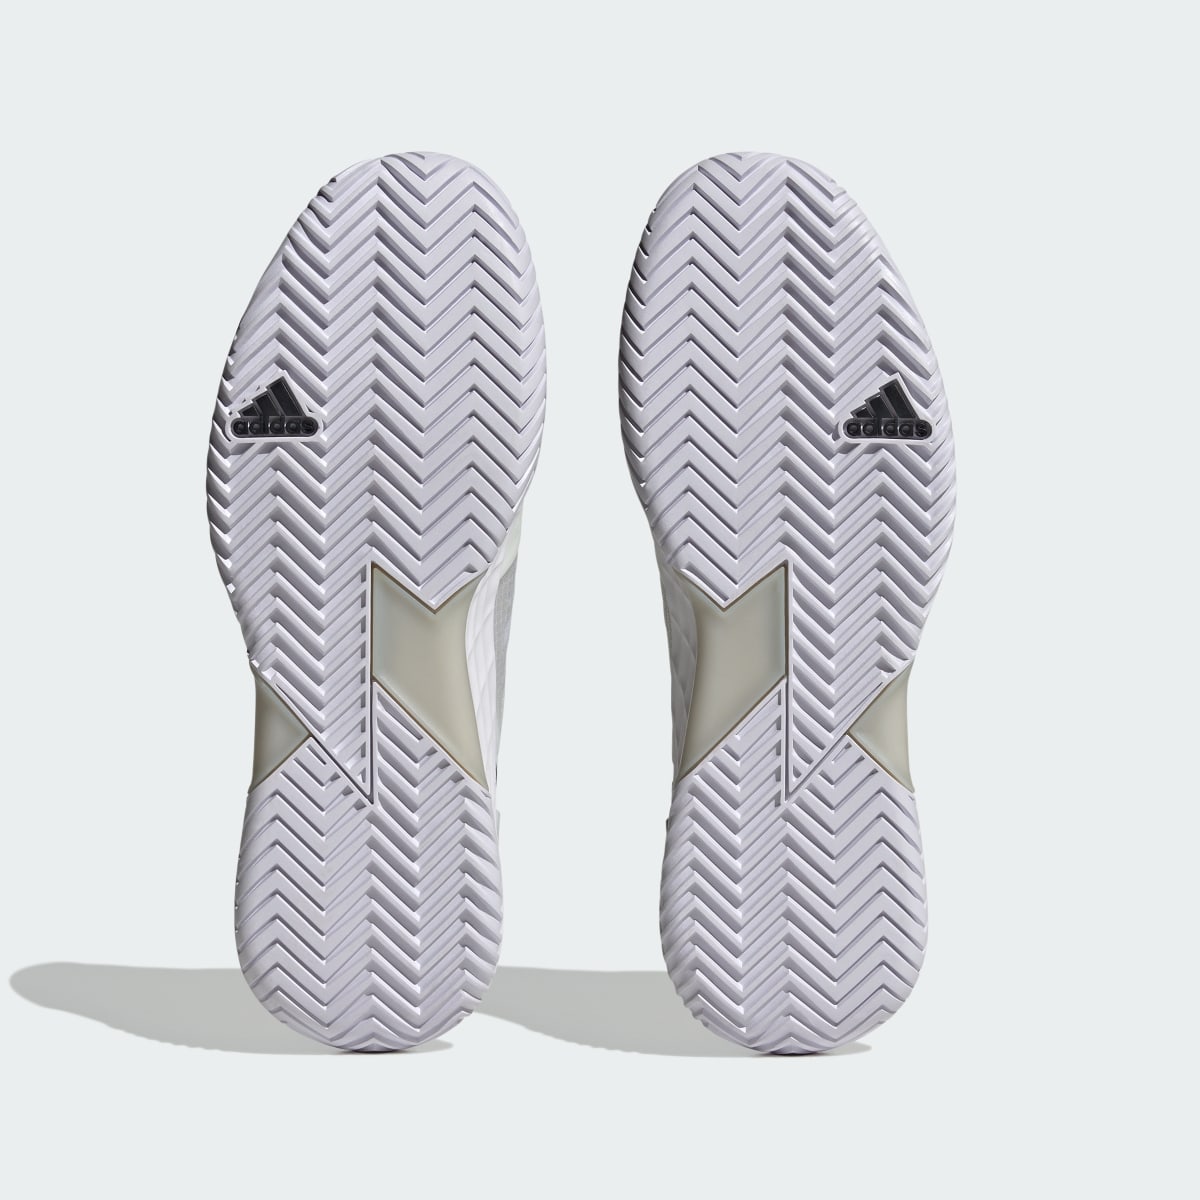 Adidas Adizero Ubersonic 4.1 Tennis Shoes. 4